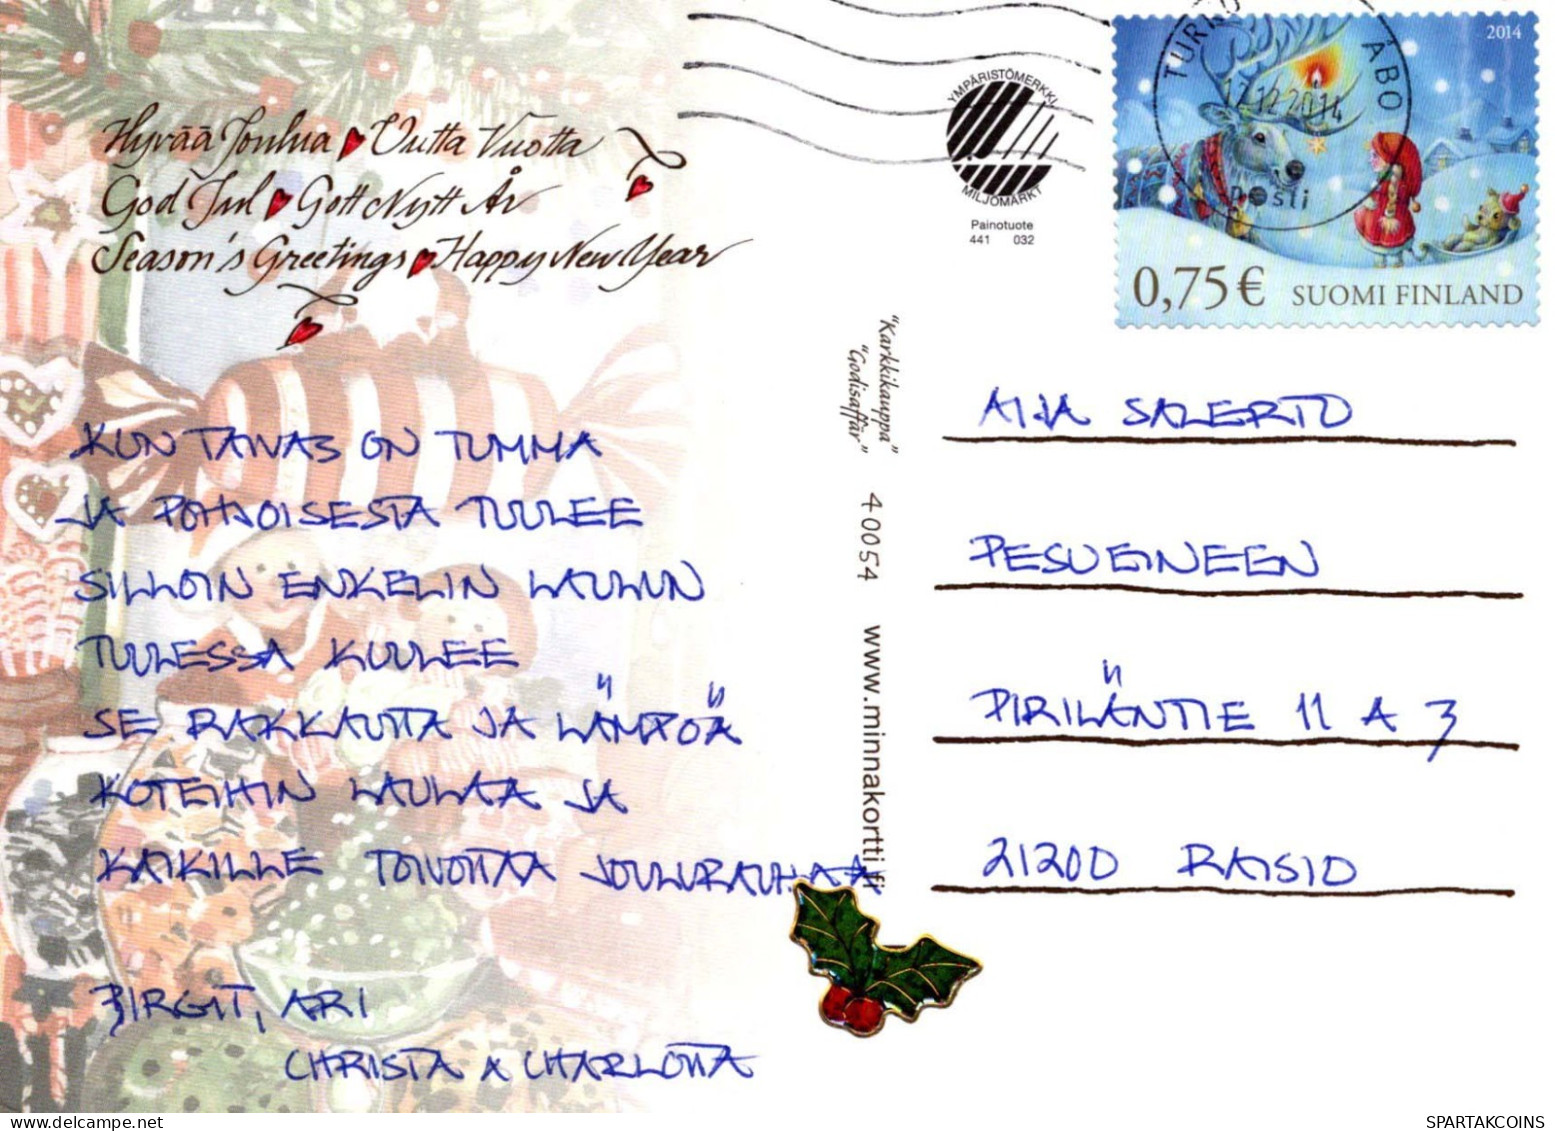 Buon Anno Natale GNOME Vintage Cartolina CPSM #PBM140.IT - Anno Nuovo